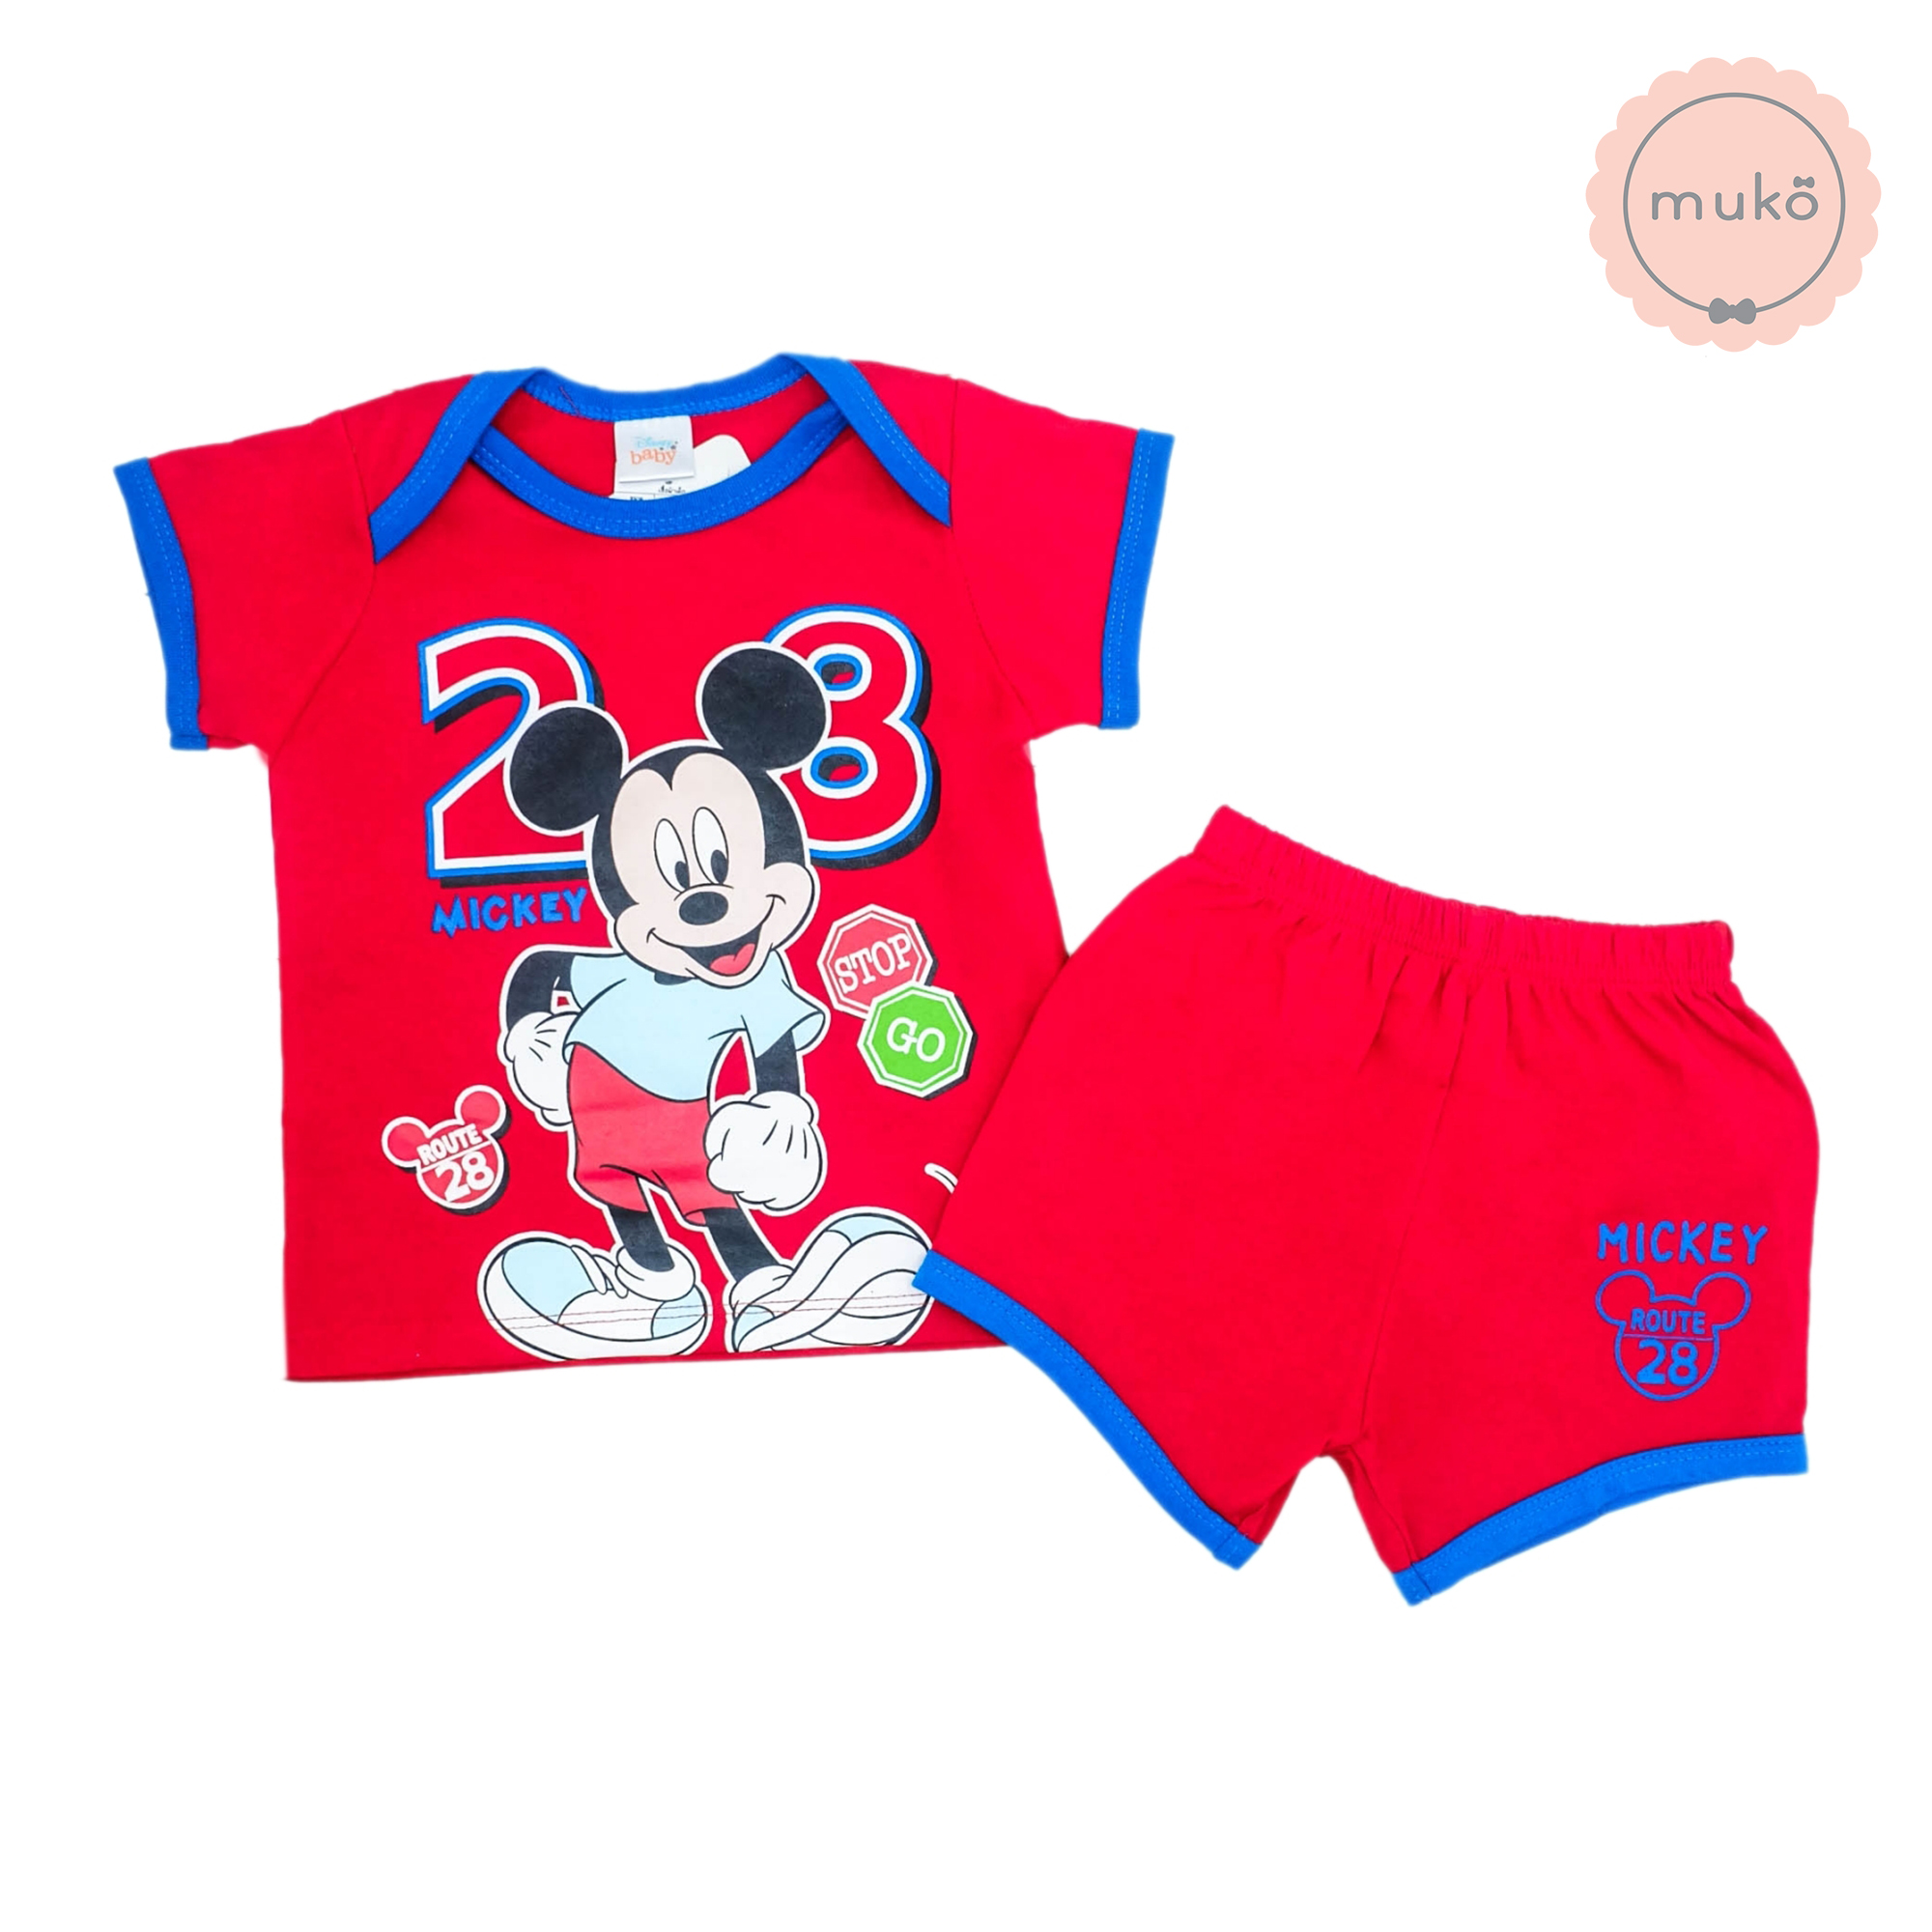 ชุดเบบี้ 6-12 เดือน แขนสั้น-ขาสั้น (M=80) DMK017-10-L-Red M ลายมิกกี้ เมาส์ Mickey Mouse